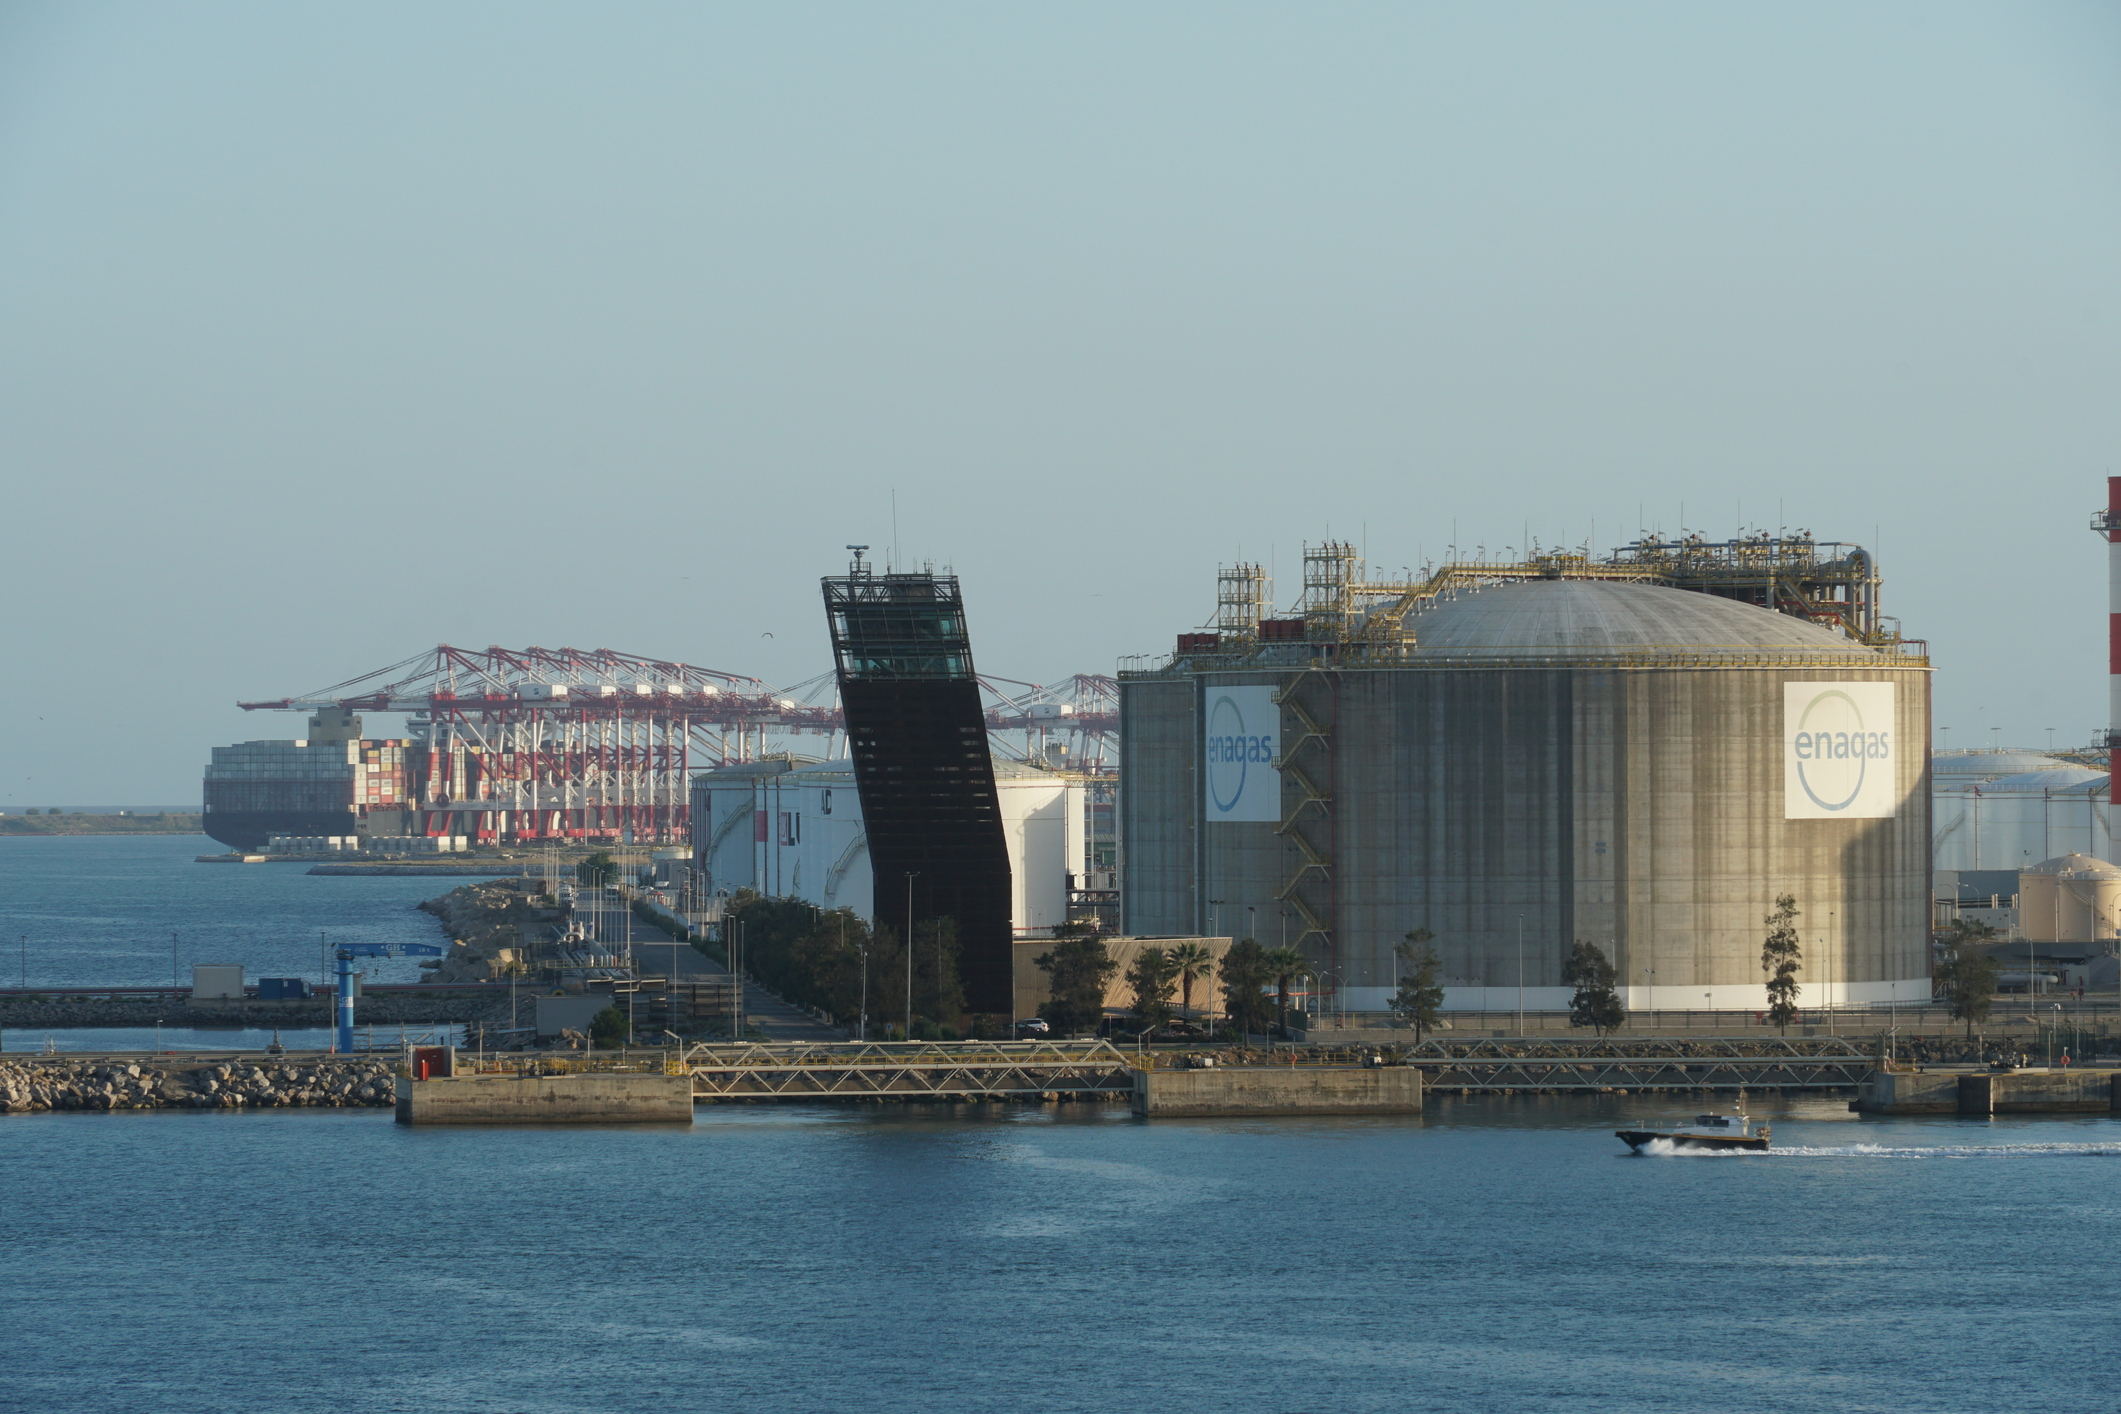 Așa arată un terminal de regazificare a gazelor naturale lichefiate. Acesta se află în Barcelona